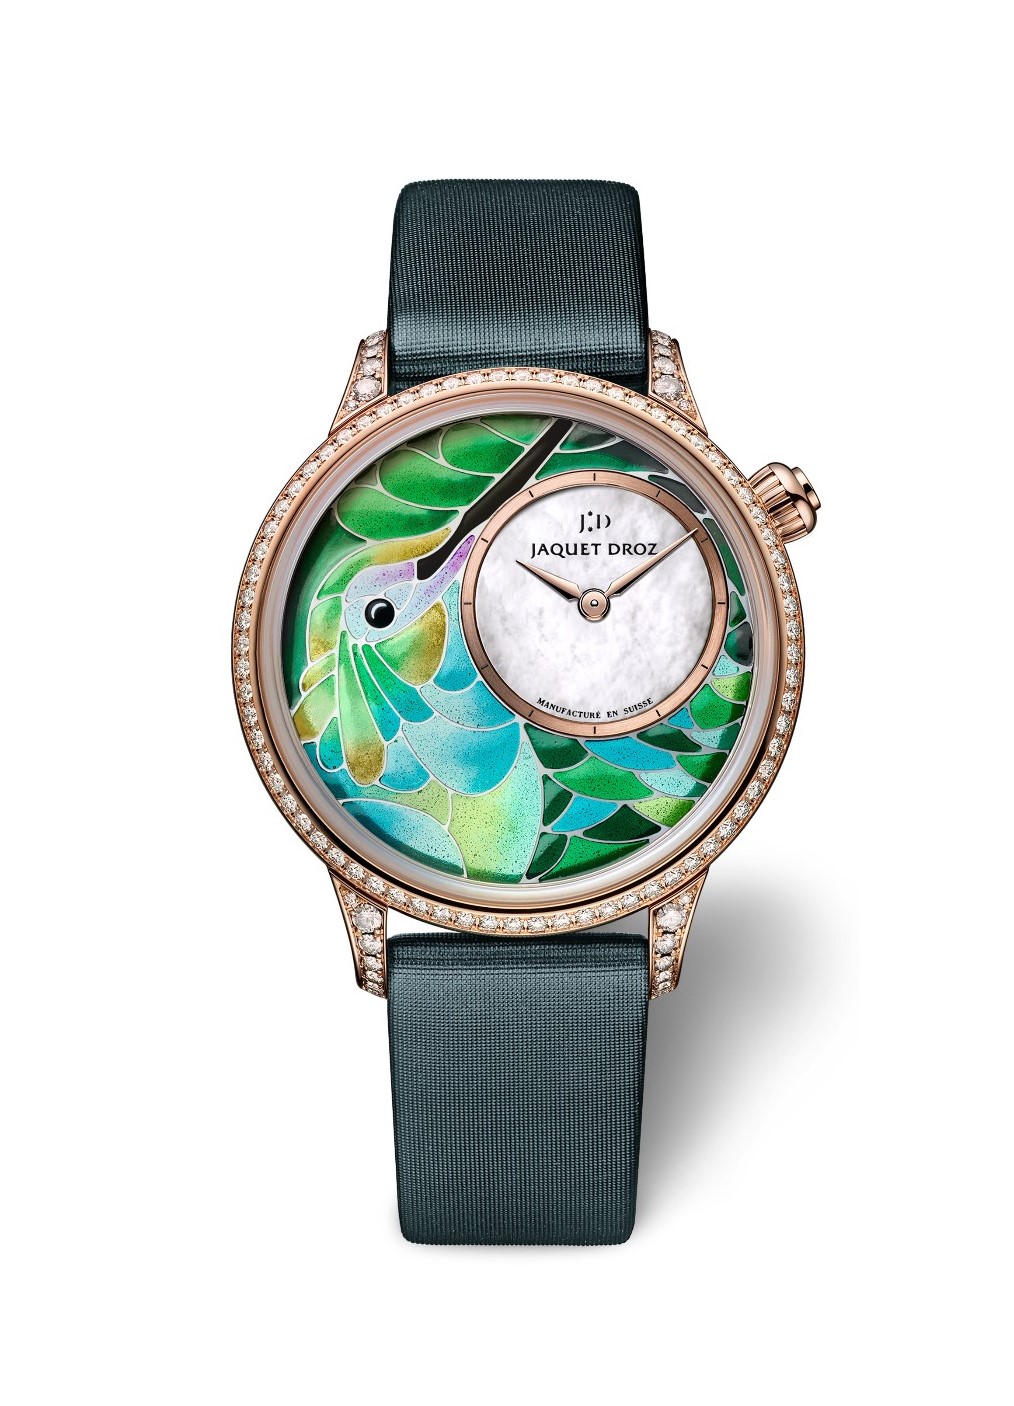 Photo : Alma Jodorowsky - Lancement de la montre Chanel Code Coco